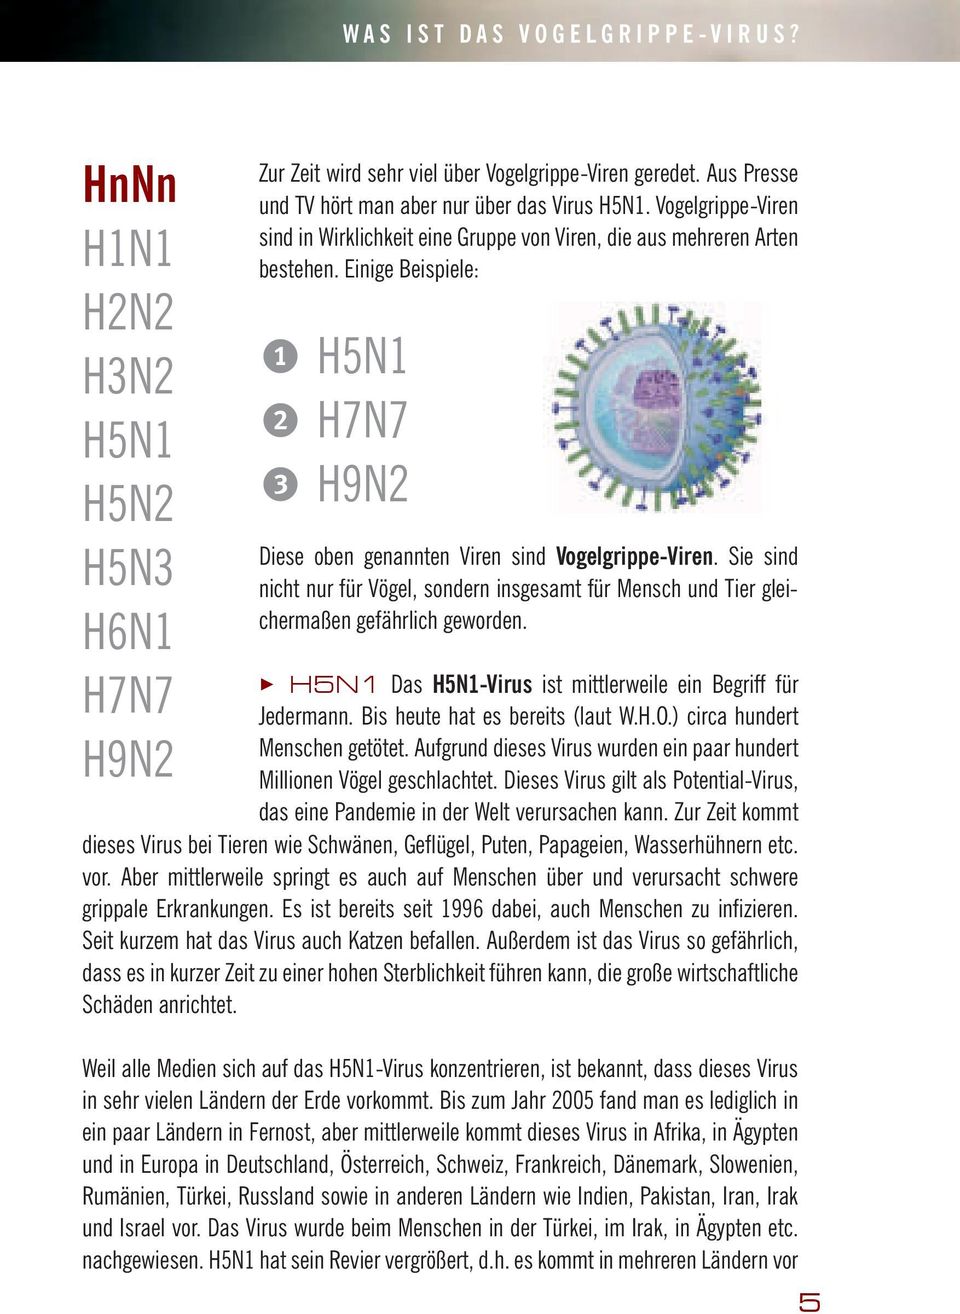 Einige Beispiele: 1 H5N1 2 H7N7 3 H9N2 Diese oben genannten Viren sind Vogelgrippe-Viren. Sie sind nicht nur für Vögel, sondern insgesamt für Mensch und Tier gleichermaßen gefährlich geworden.